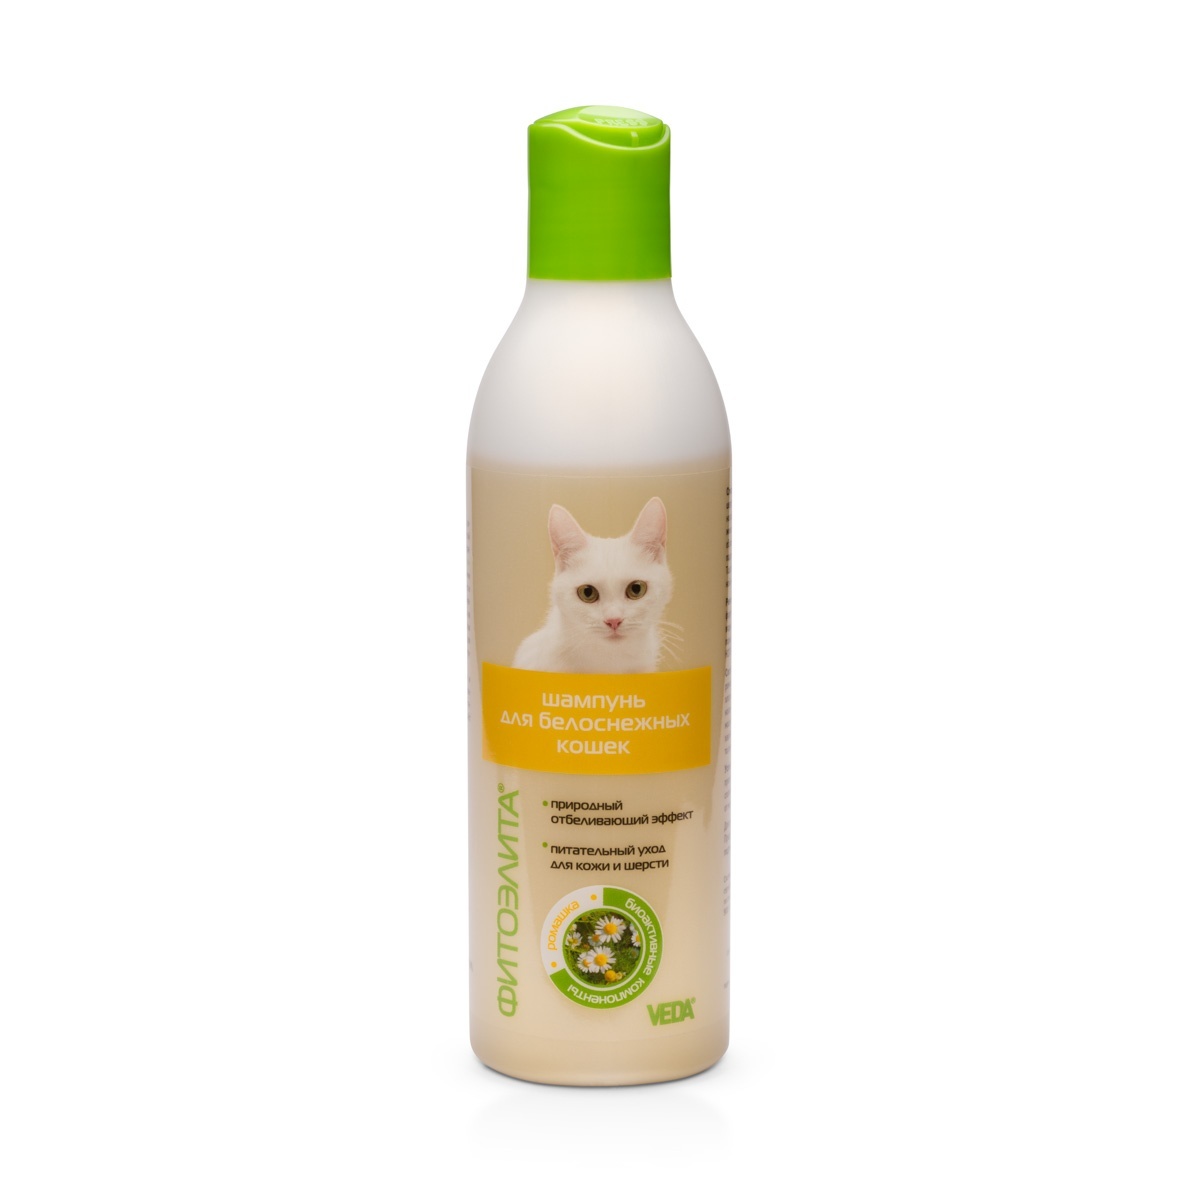 Веда Веда шампунь для белоснежных кошек (220 г) цена и фото